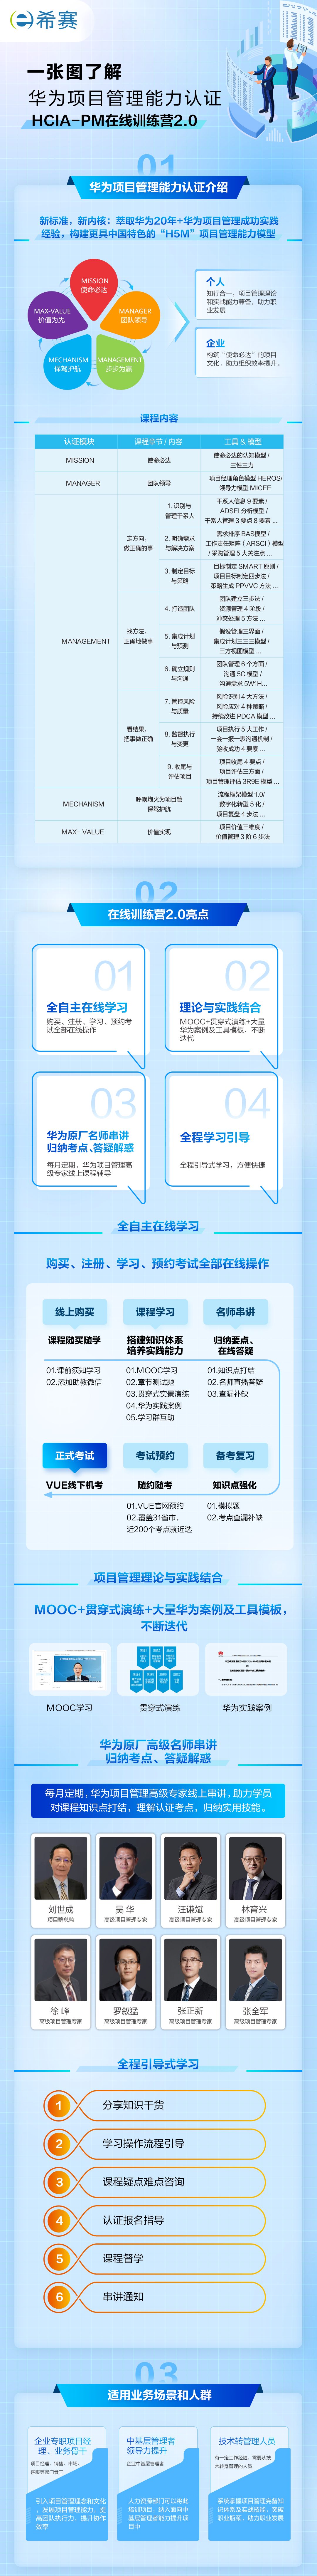 一张图了解华为项目管理培训认证-希赛.png